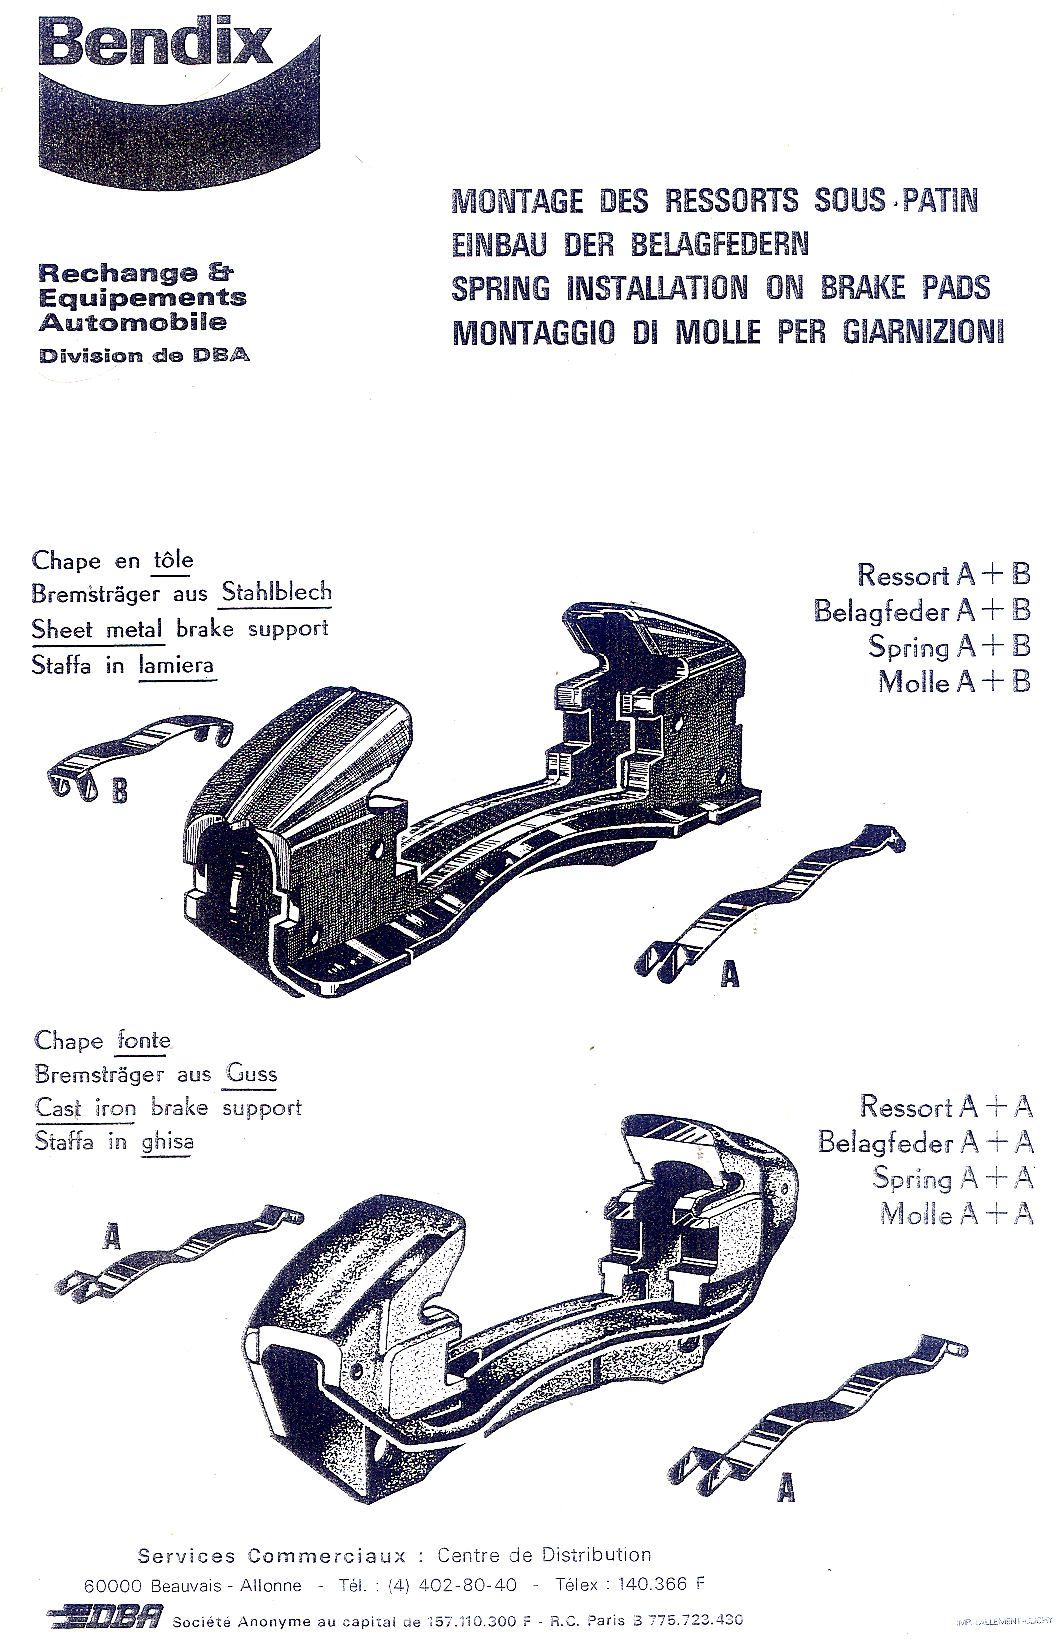 Kit de ressorts pour plaquettes de freins Bendix Avant ou Arrière (Montage  Gros Frein) - R8G / A110 / R16